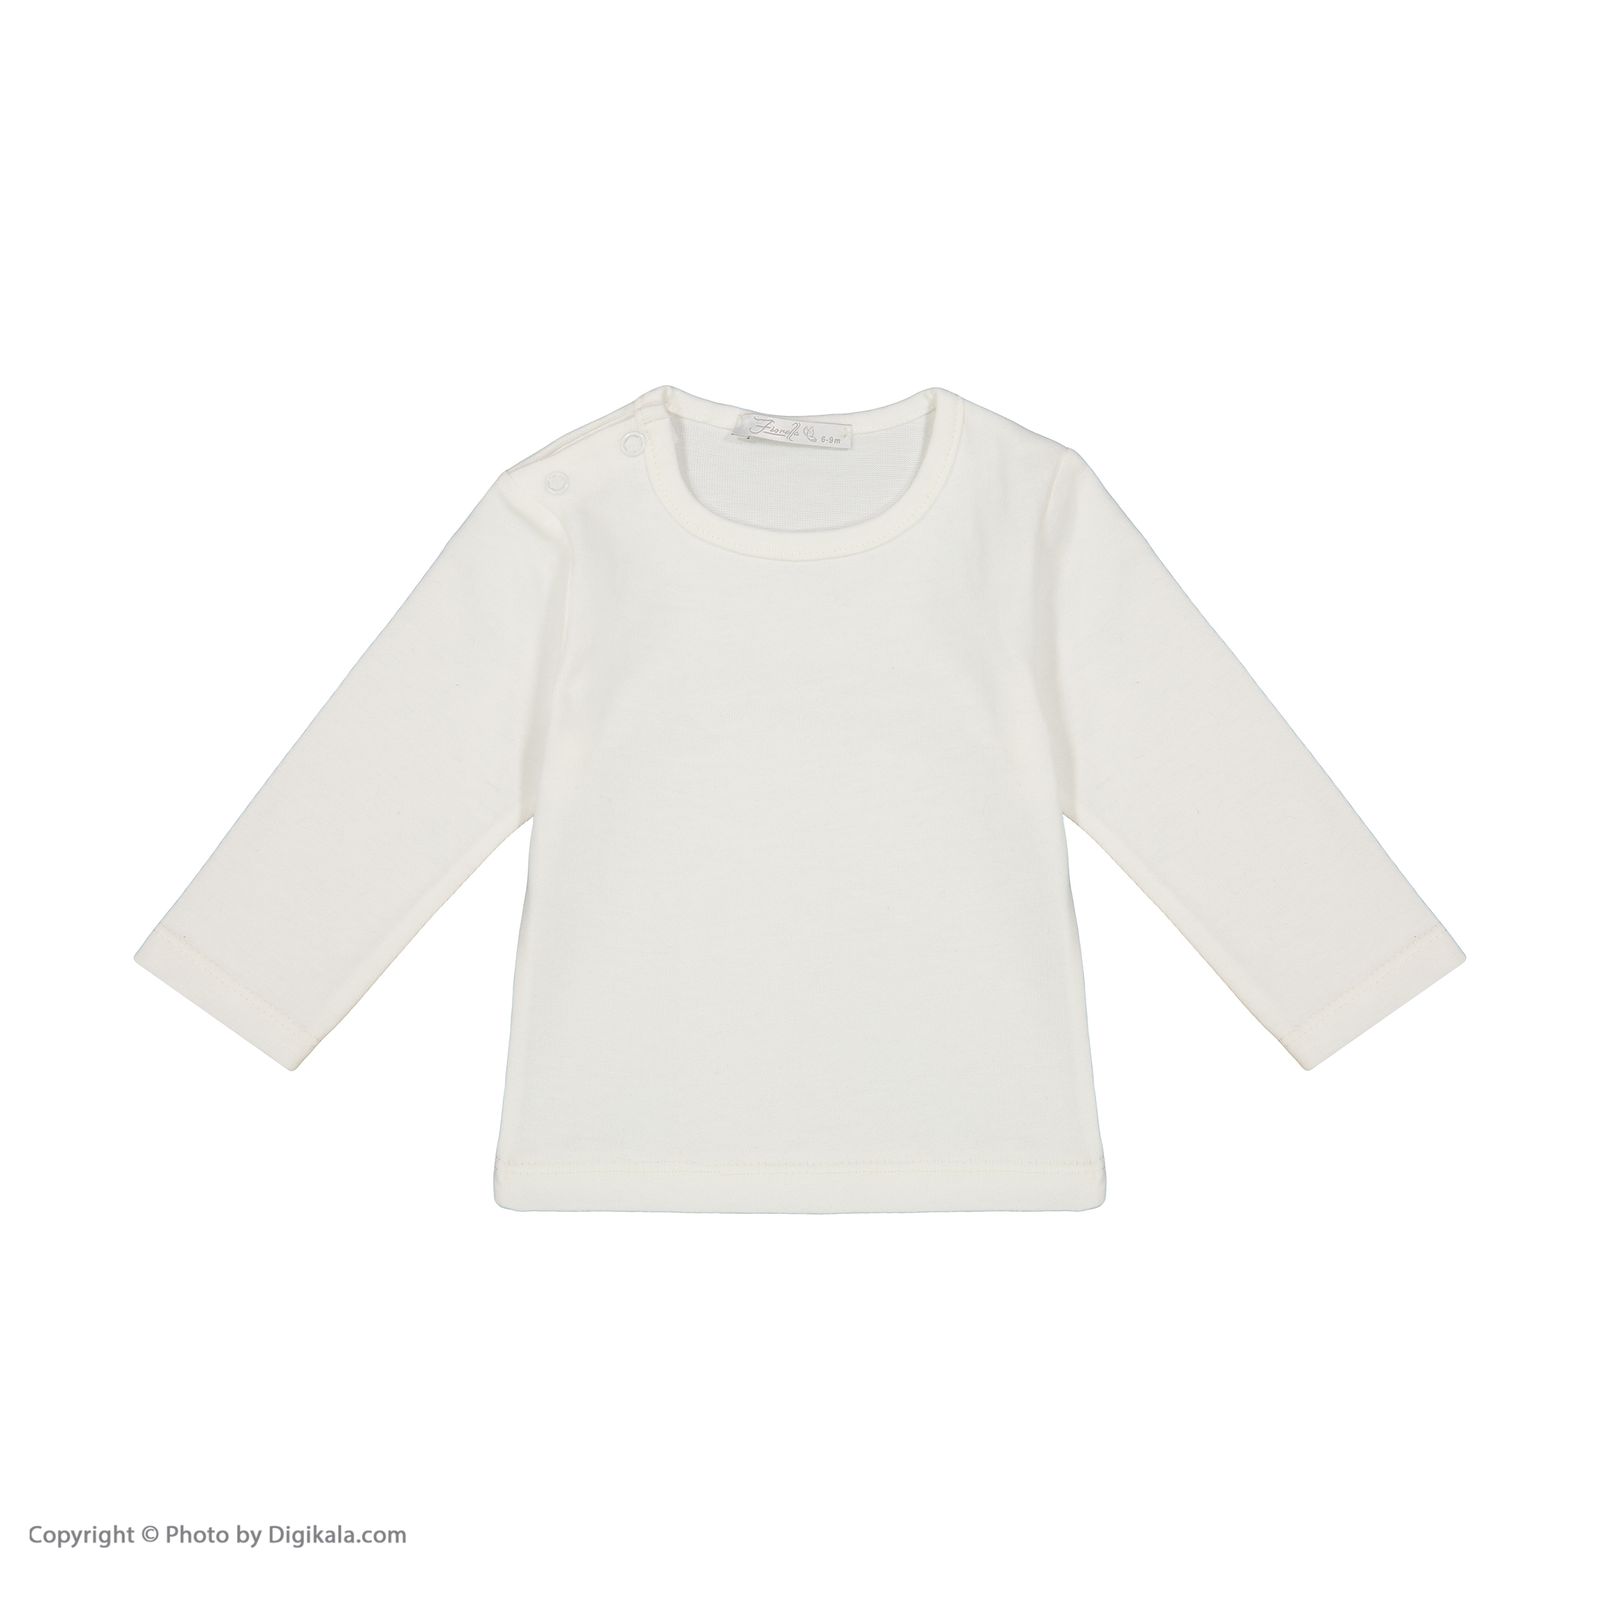 ست تی شرت و سارافون نوزادی دخترانه فیورلا مدل 22518-09 -  - 4